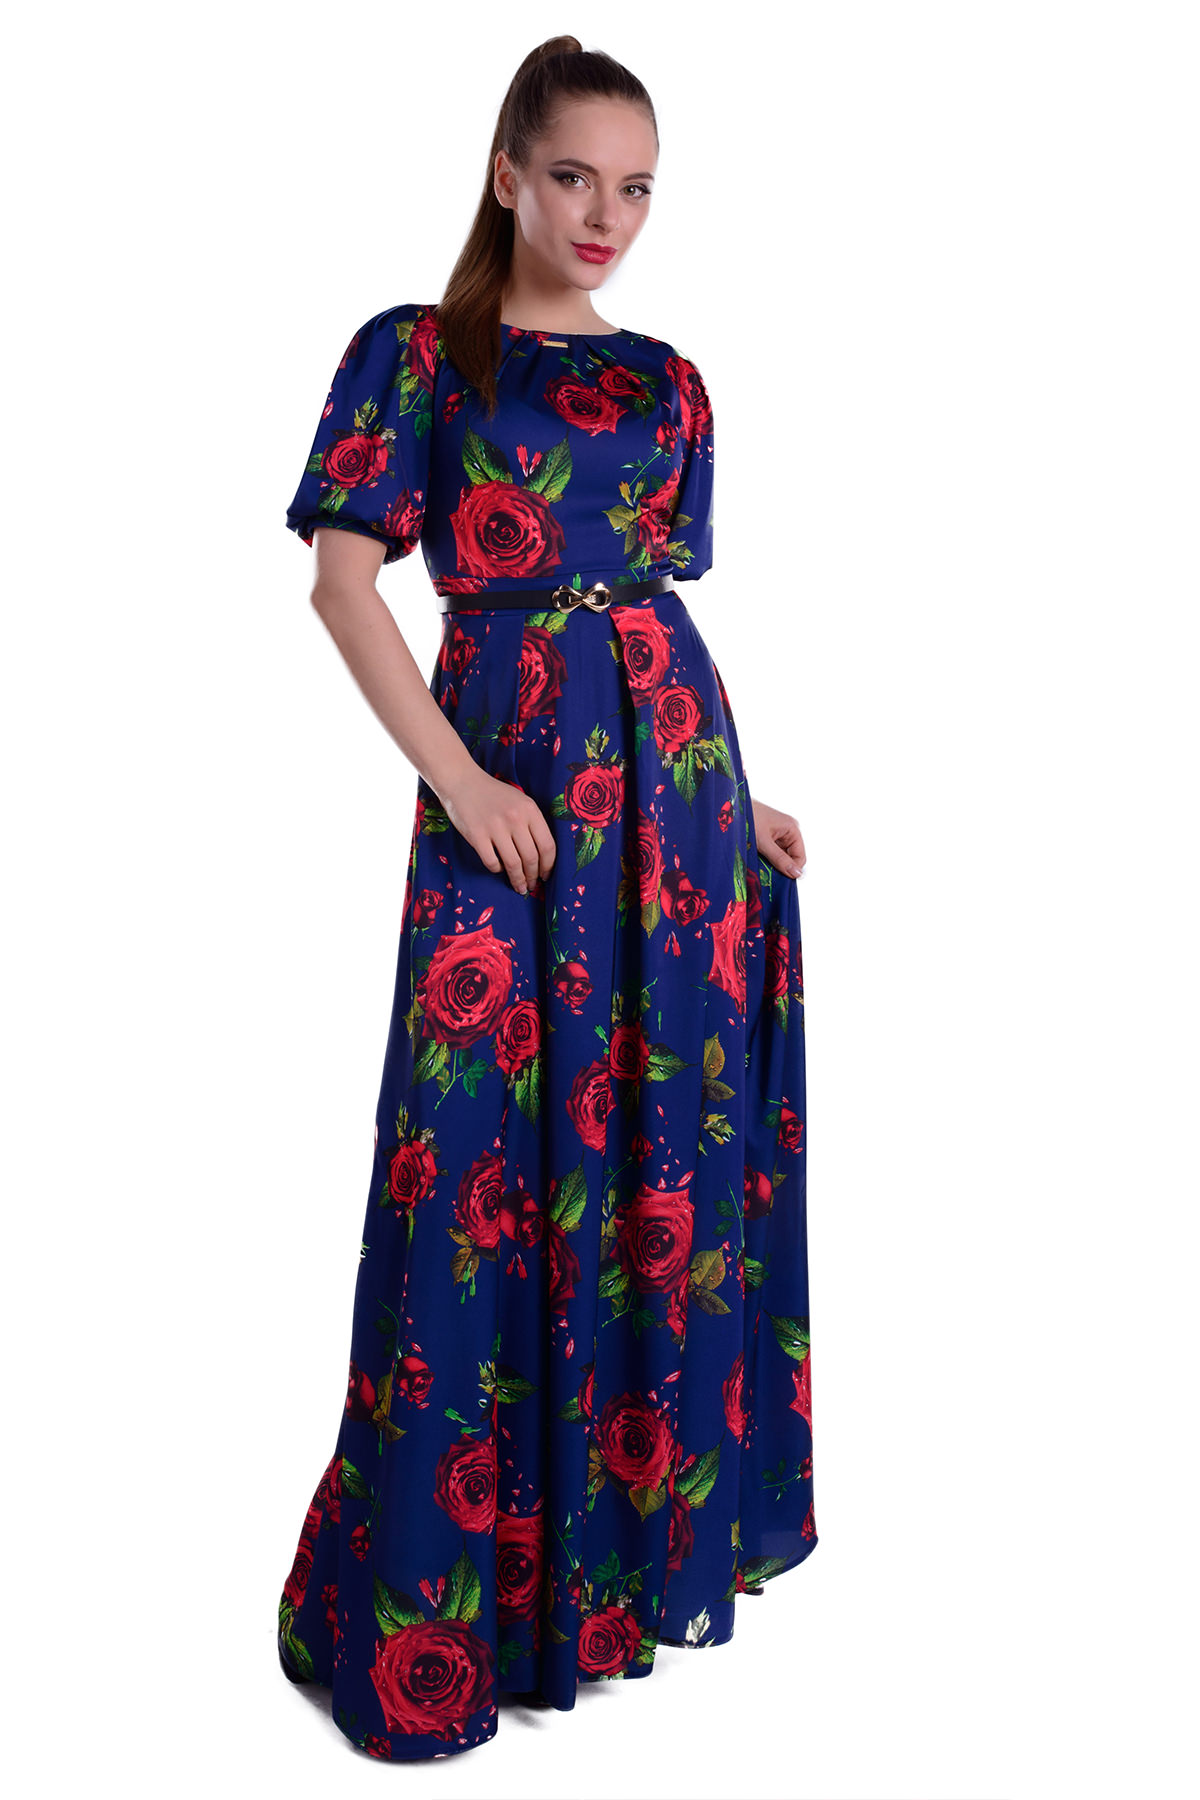 Женская одежда оптом от производителя Платье Марта принт Шифон Атлас